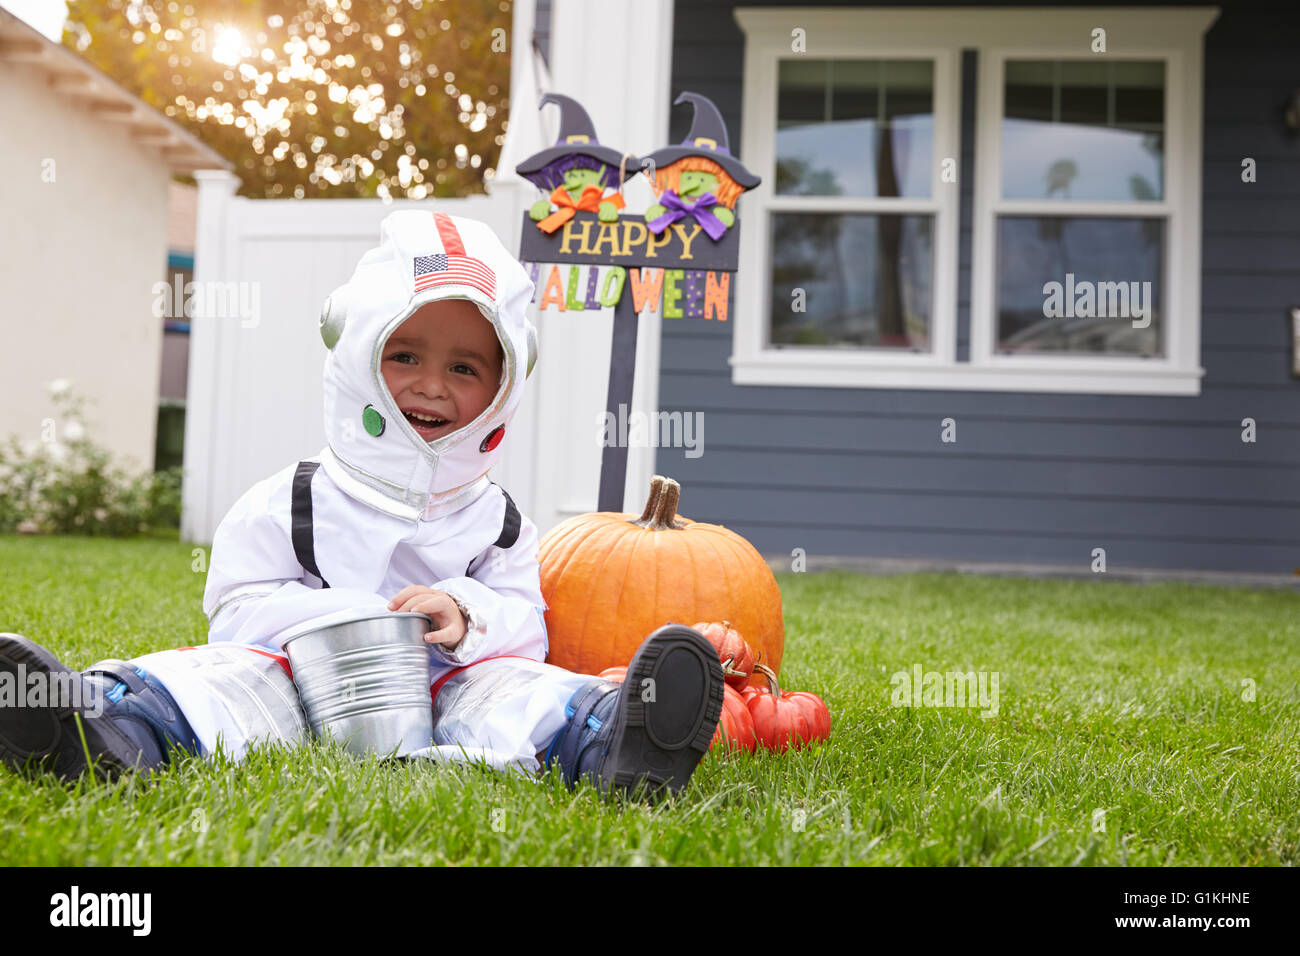 Junge gekleidet In Trick oder Behandlung von Spaceman Kostüm auf Rasen Stockfoto